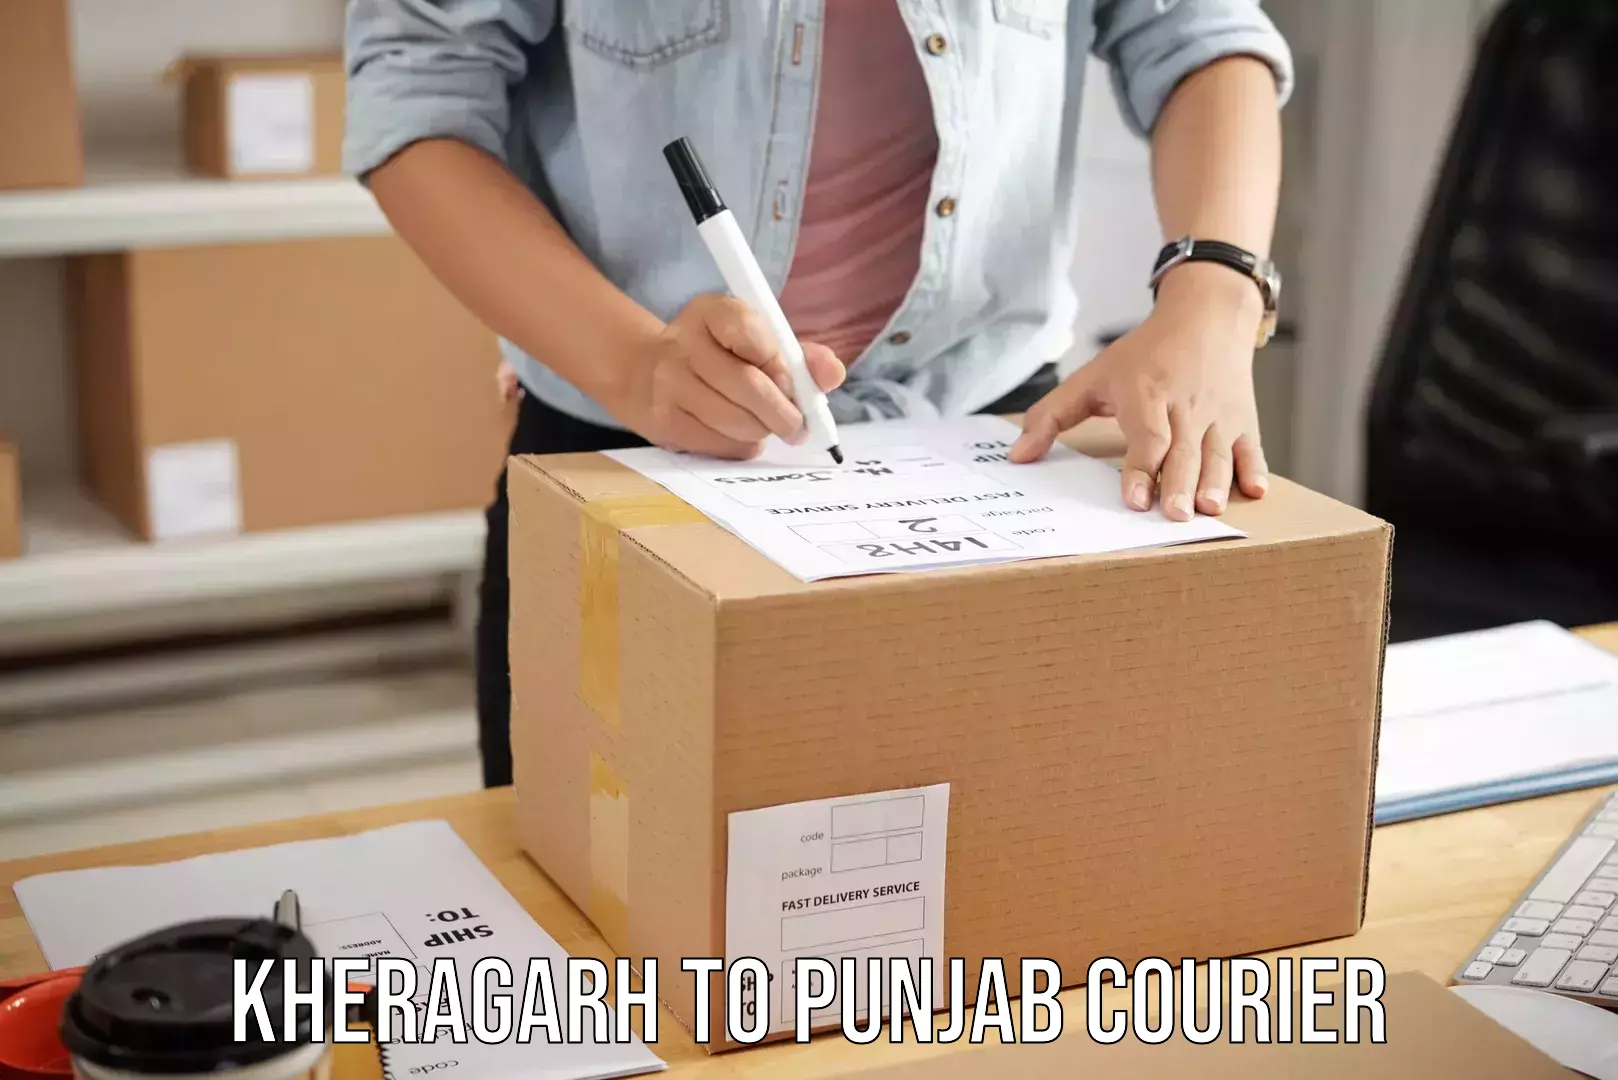 Luggage transport consultancy Kheragarh to Punjab